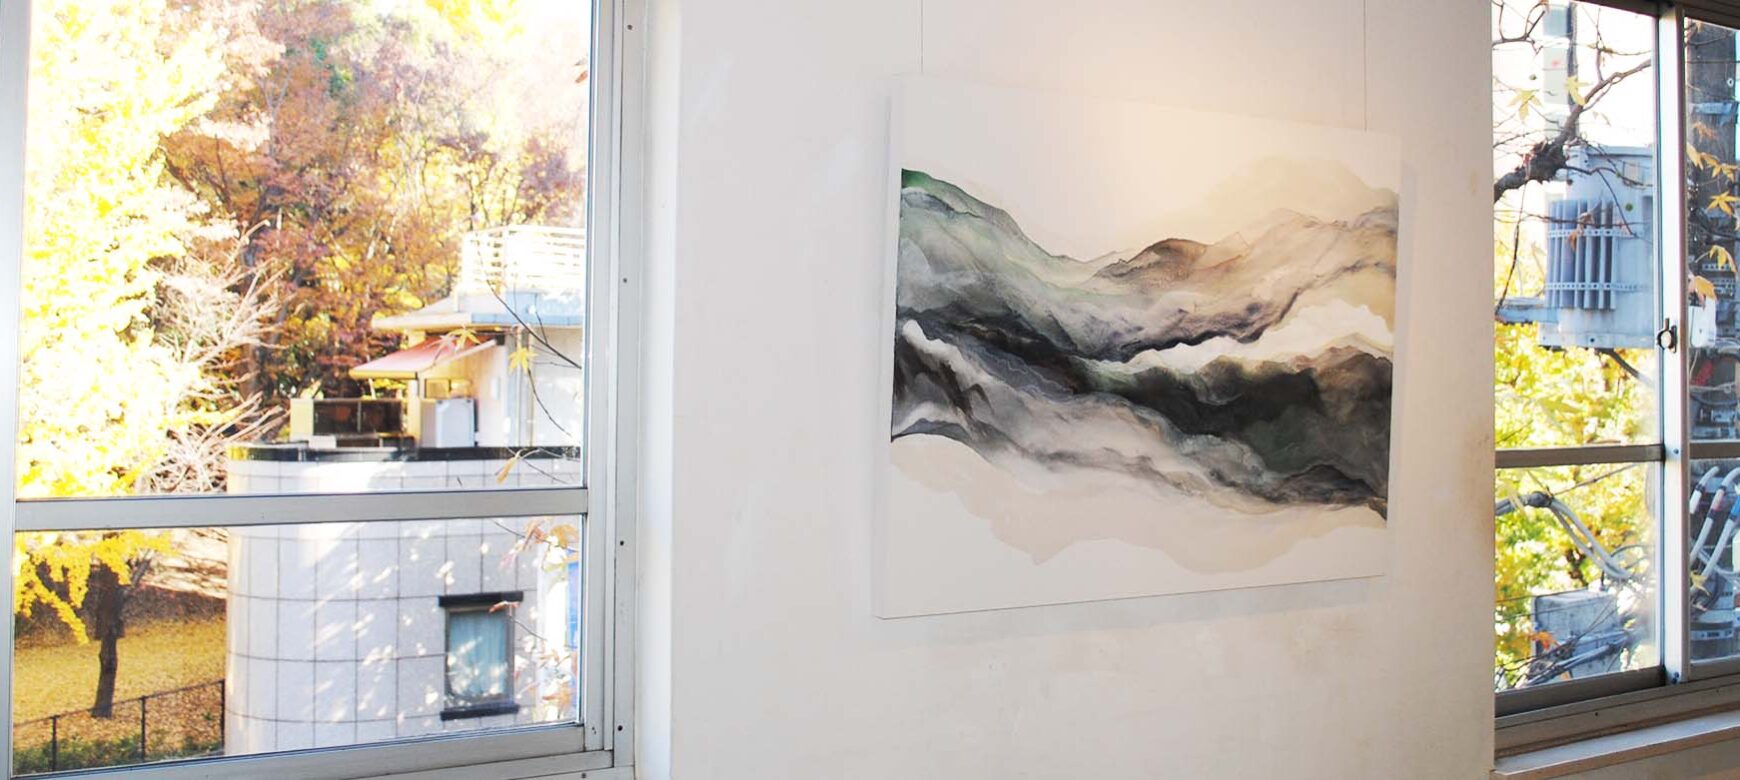 Saori Masuda Solo Exhibition “Landscape” has finished.